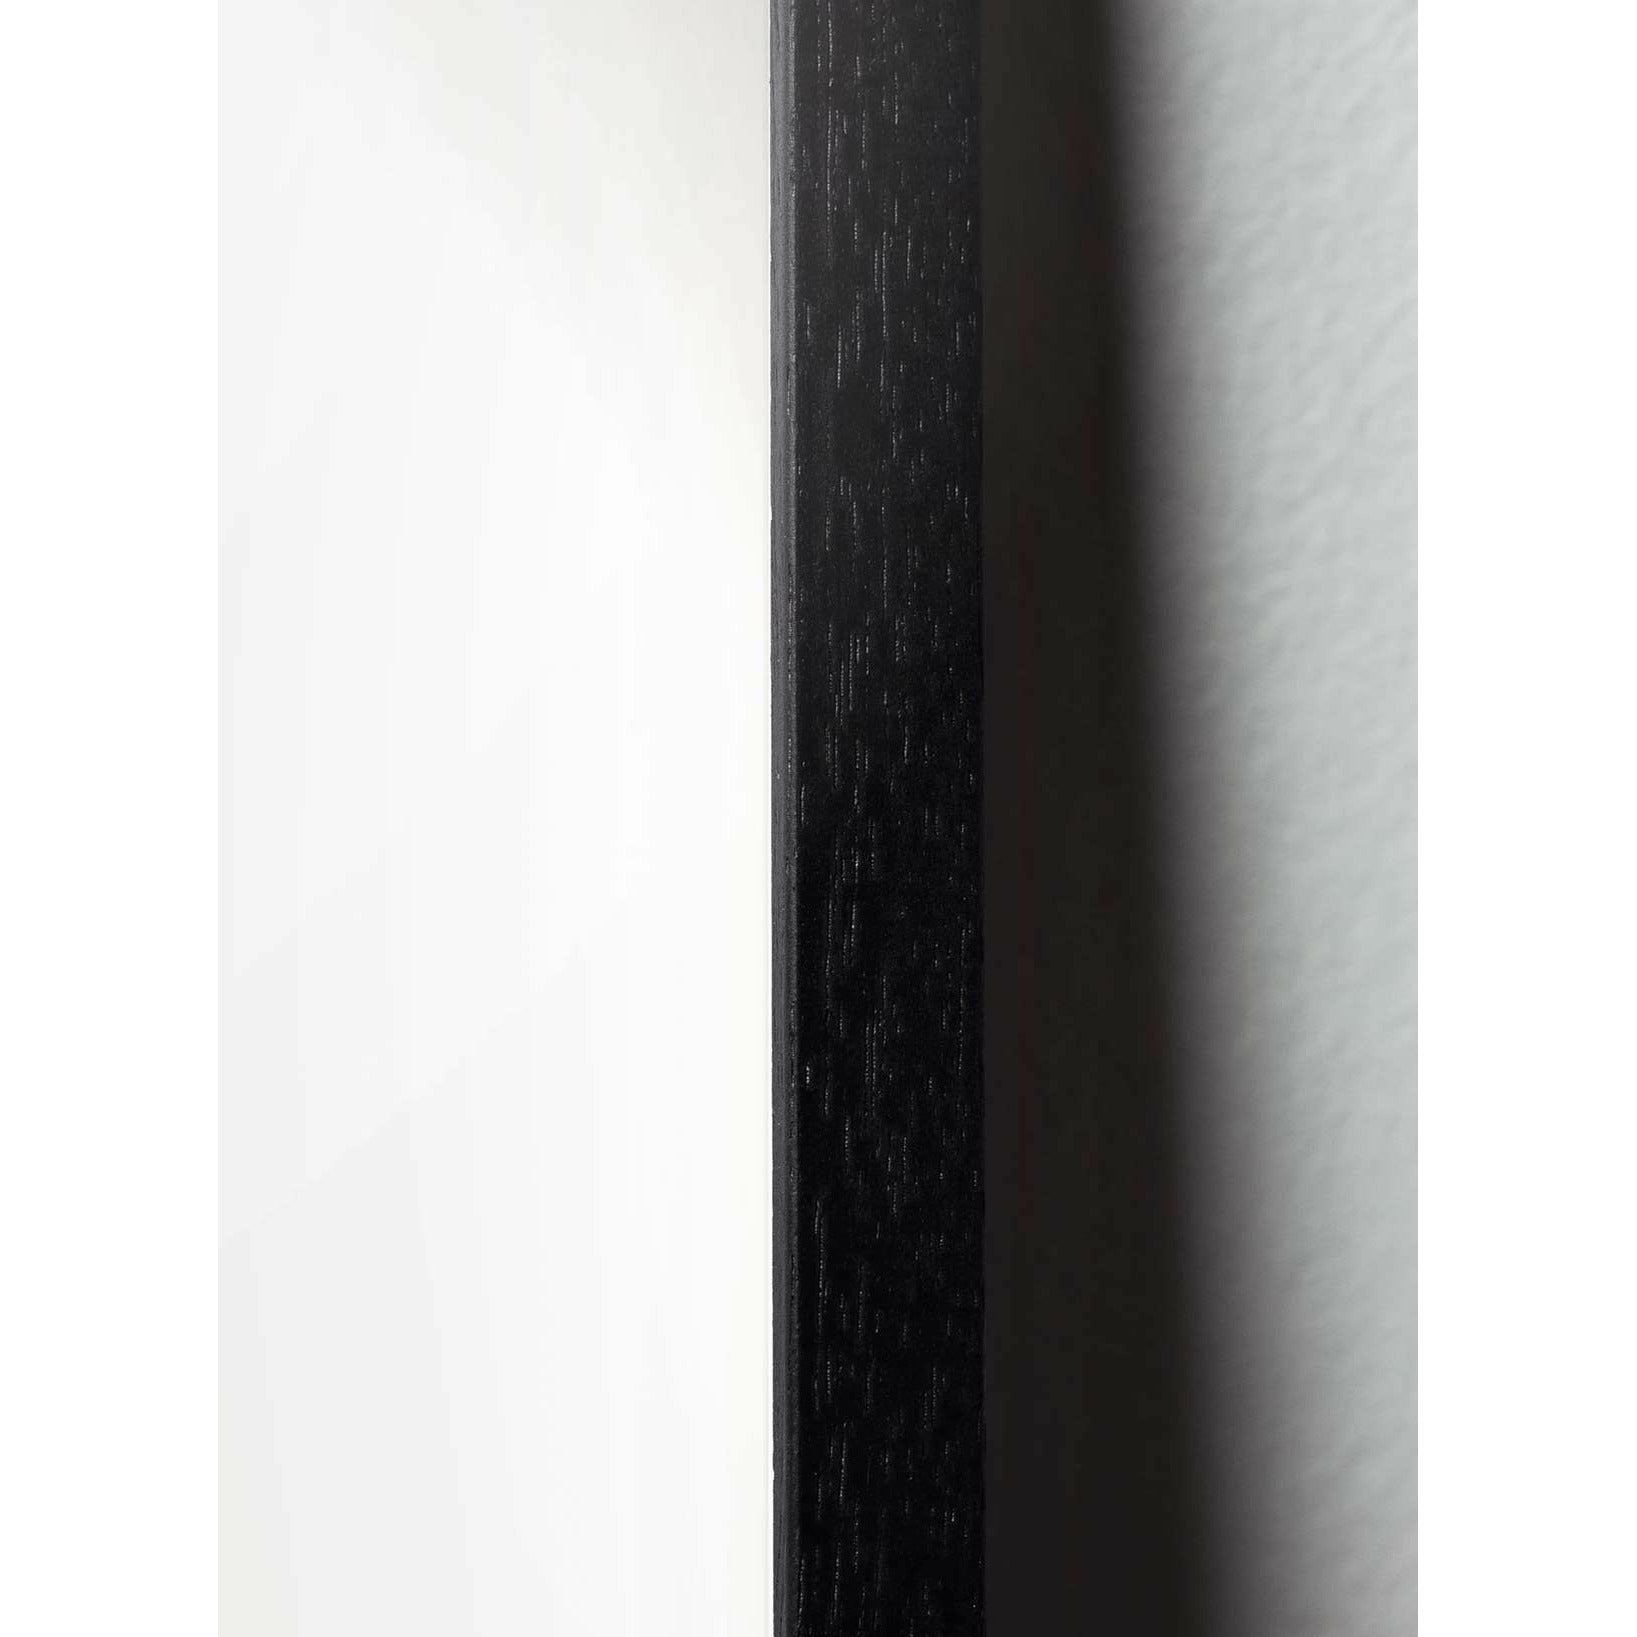 Brainchild Blumentopf Classic Poster, Rahmen aus schwarz lackiertem Holz 70x100 cm, dunkelblauer Hintergrund